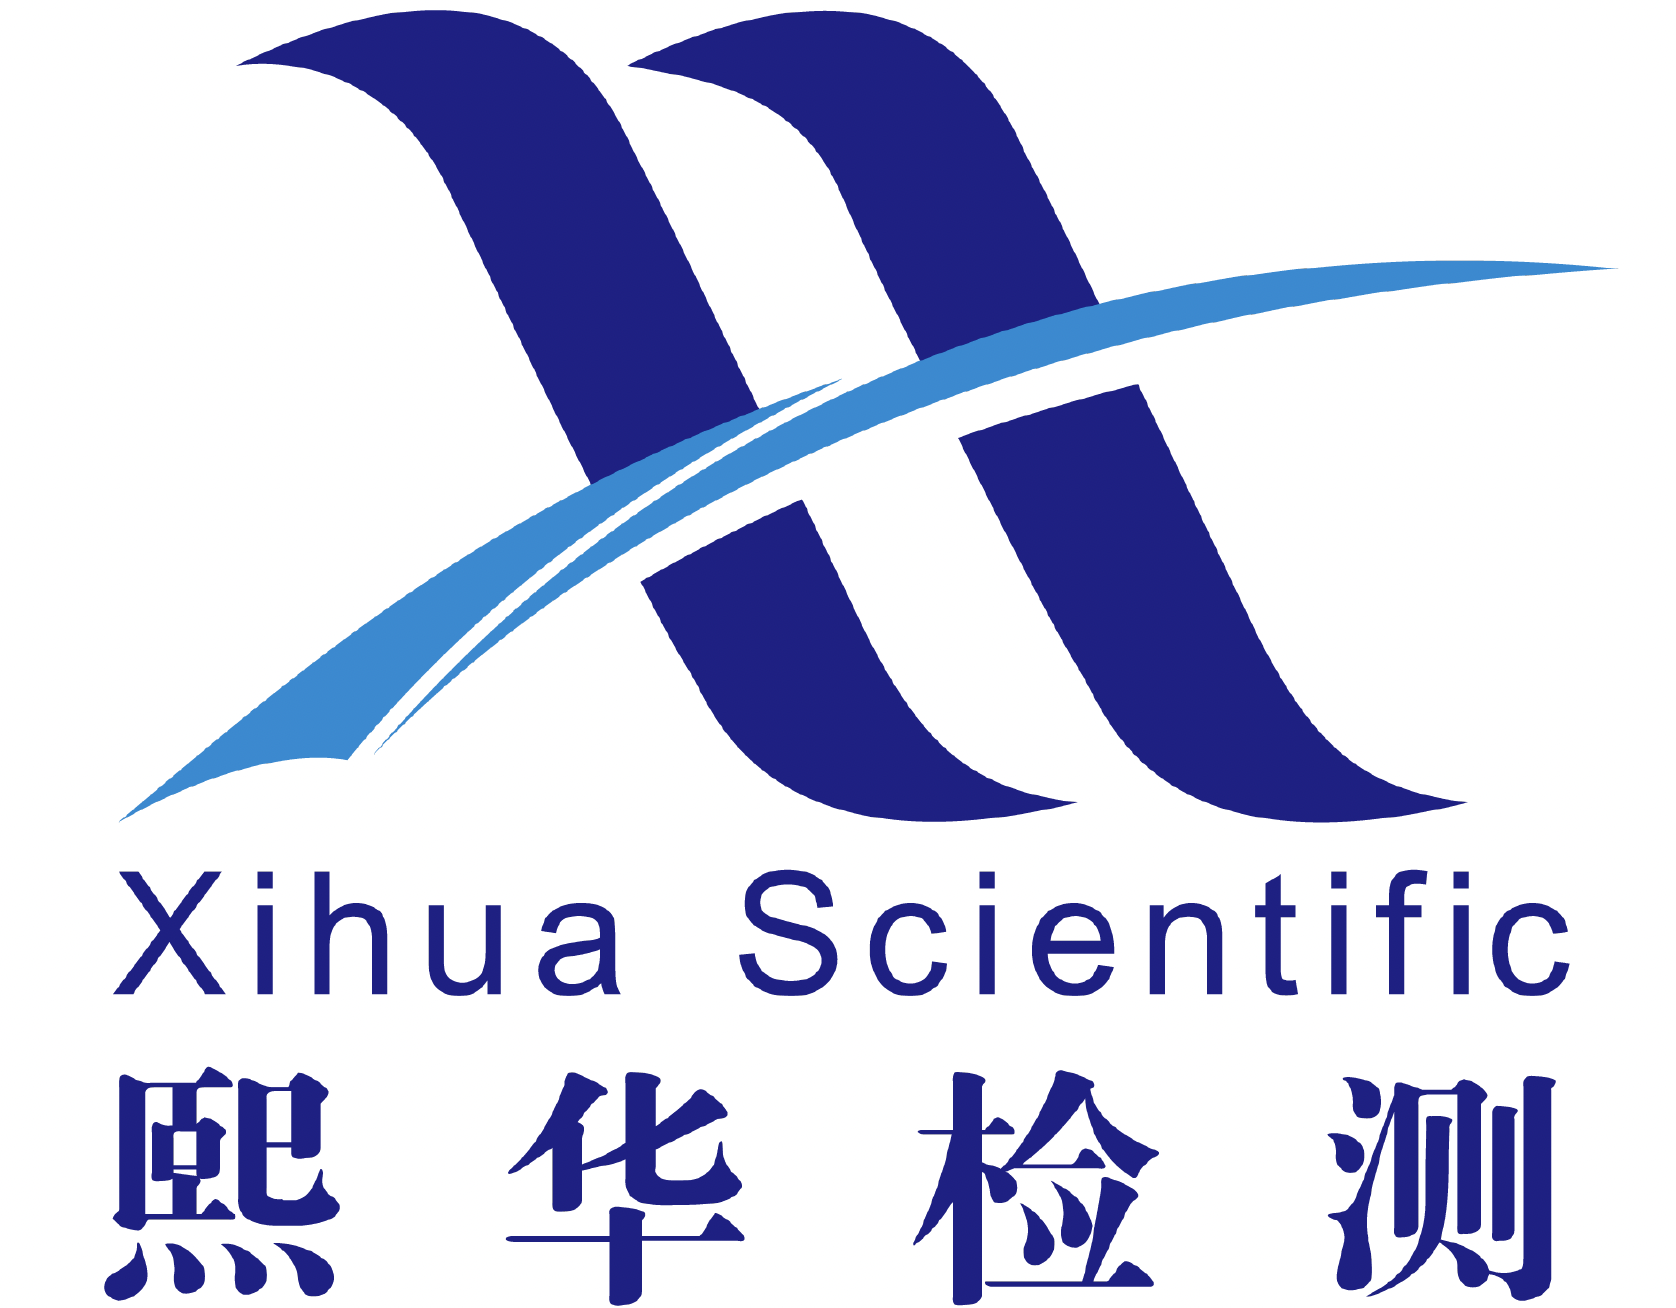 Shanghai Xihua Scientific